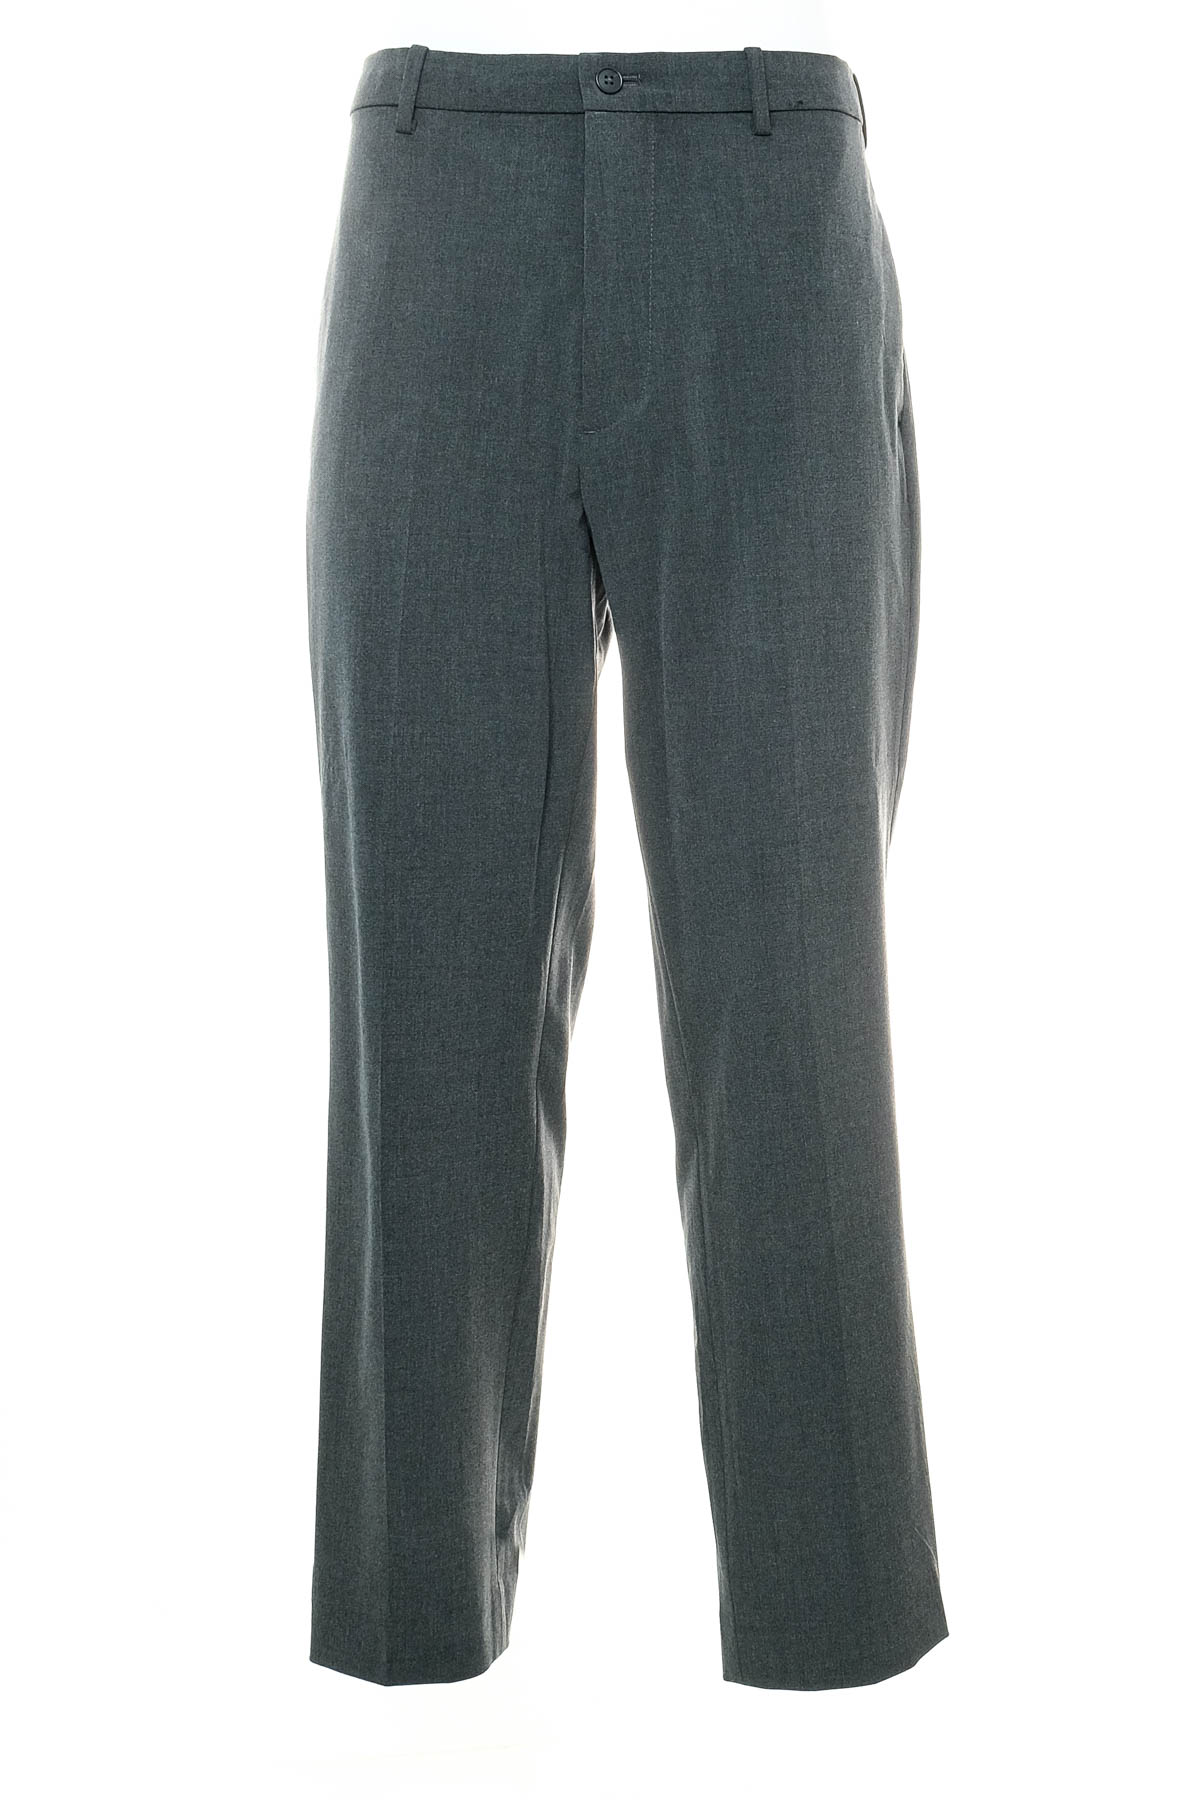 Men's trousers - UNIQLO - 0